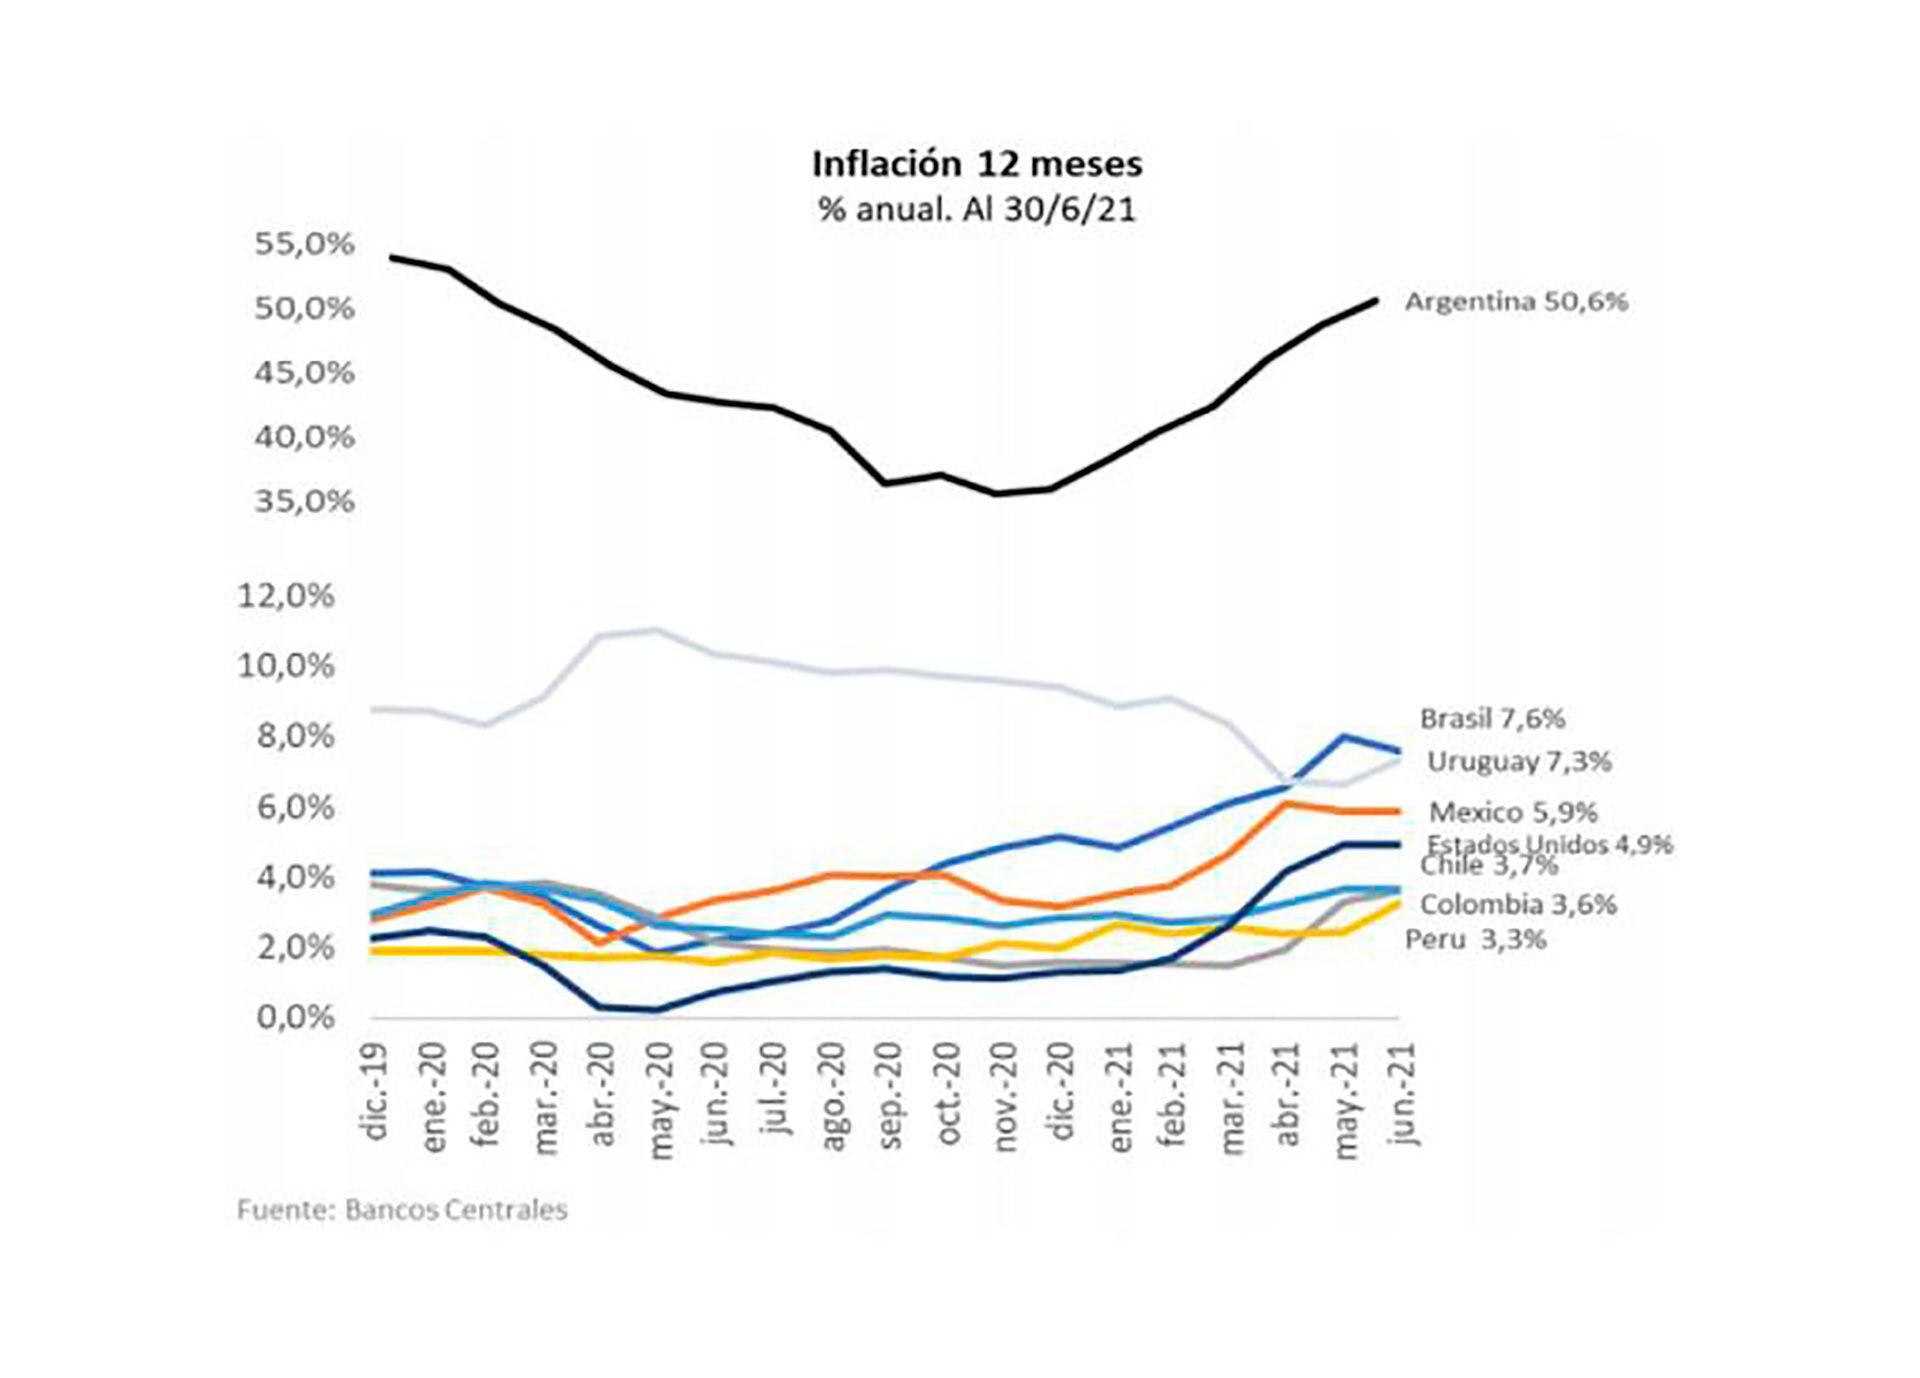 El gráfico permite apreciar la diferencia de escala en que transcurre la inflación en la Argentina